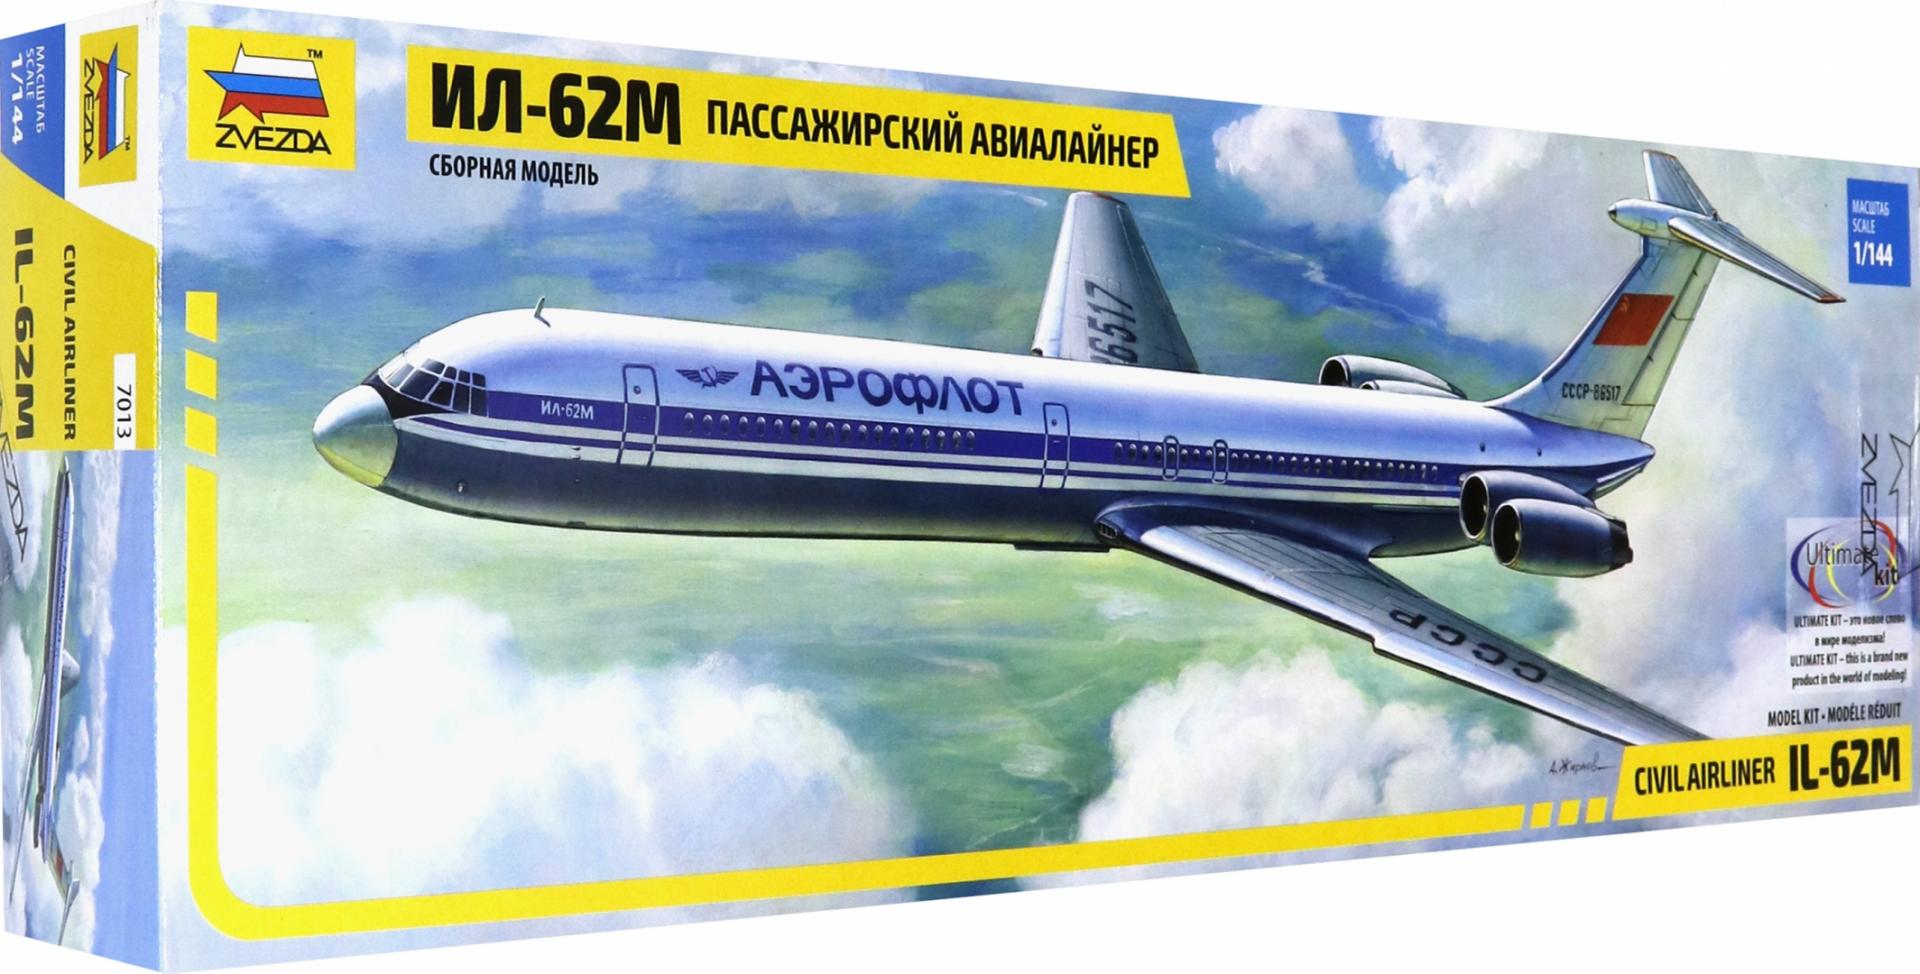 Иллюстрация 1 из 9 для Советский пассажирский авиалайнер Ил-62М (7013) | Лабиринт - игрушки. Источник: Лабиринт